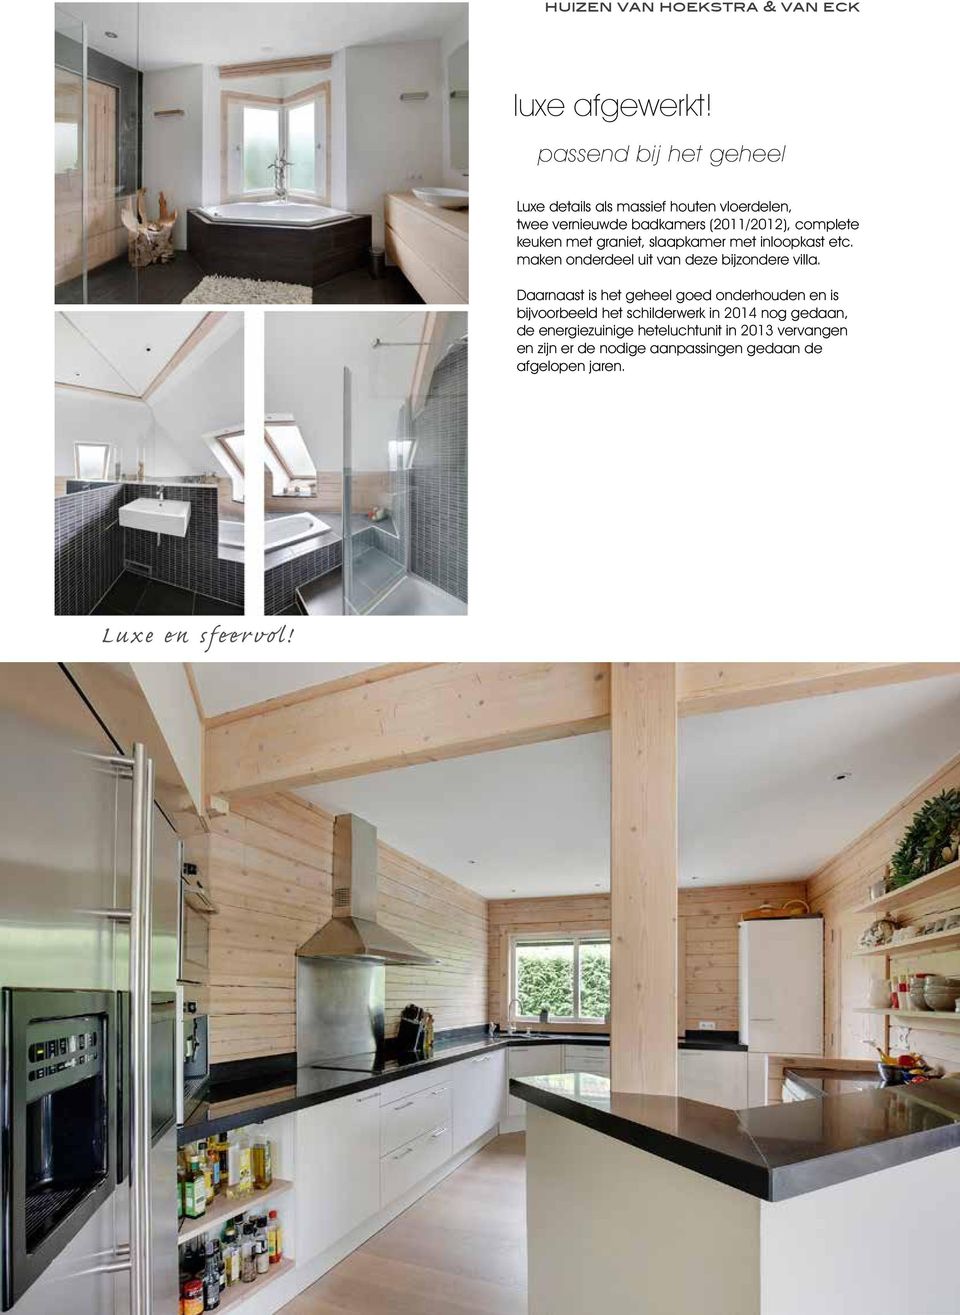 keuken met graniet, slaapkamer met inloopkast etc. maken onderdeel uit van deze bijzondere villa.